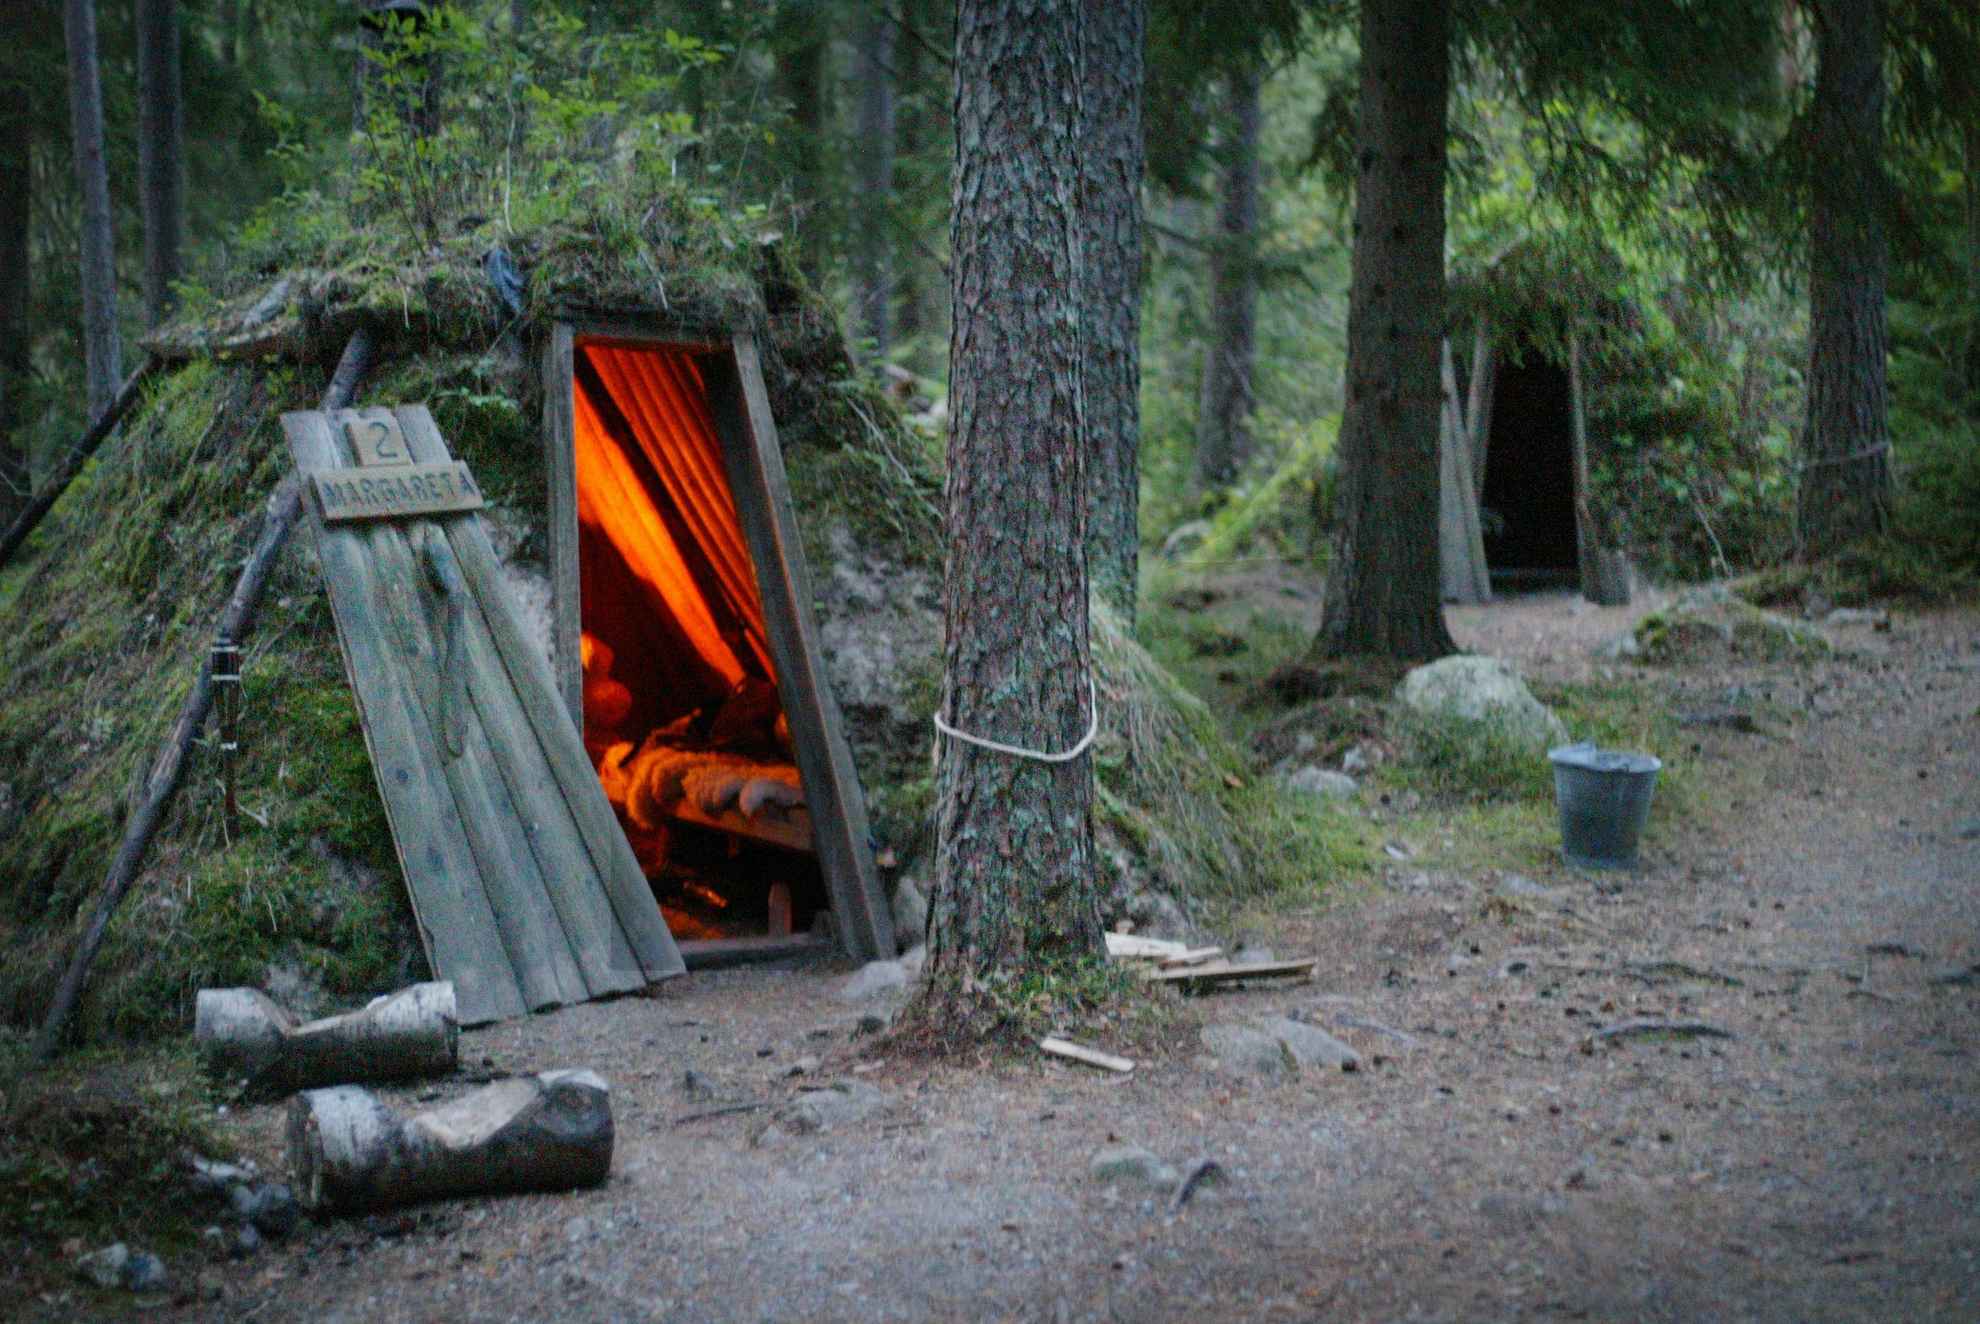 Zwei mit Moos bedeckte Waldhütten in einem Wald. In einer der Hütten brennt ein Kamin.